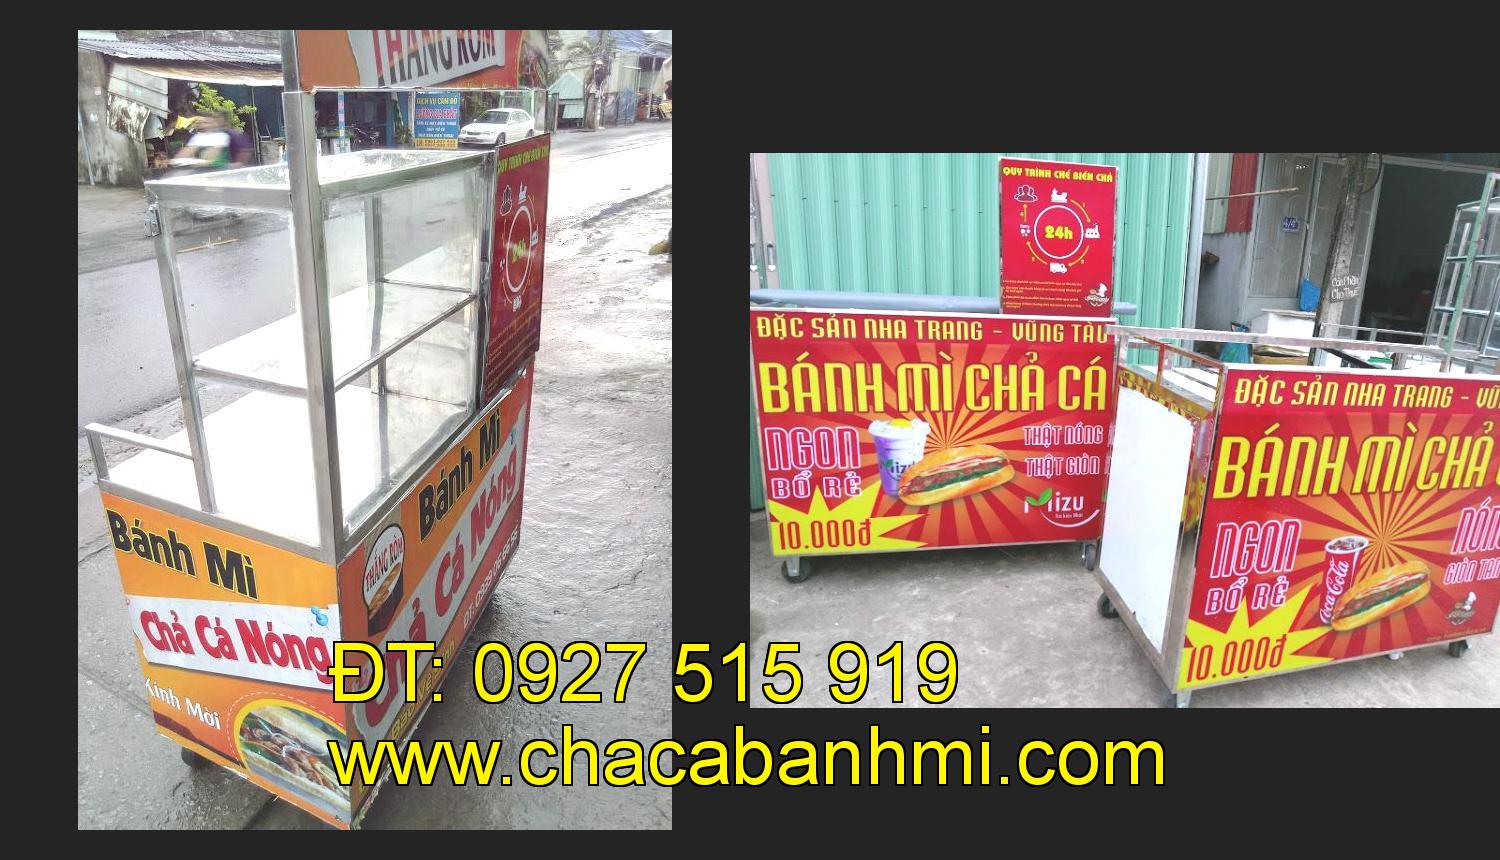 xe bánh mì chả cá inox tại tỉnh Bạc Liêu